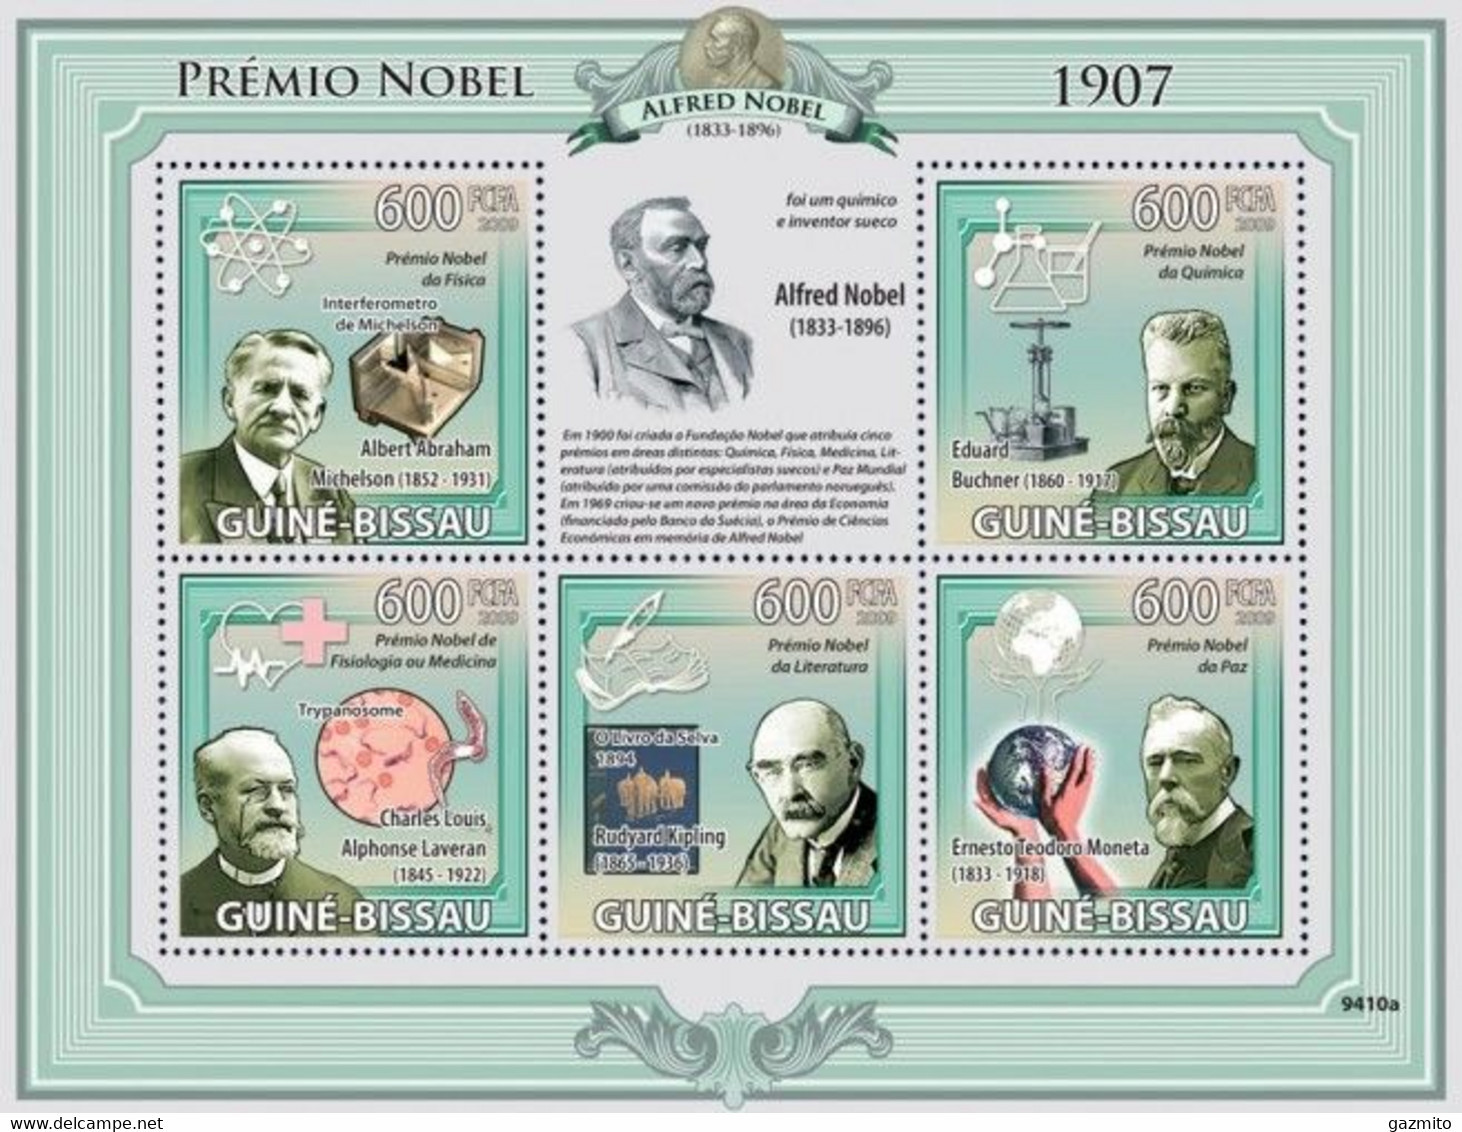 Guinea Bissau 2009, Nobel Prices 1907, Kiplik, Moneta, Laveran, Buchner, 5val In BF - Chemistry